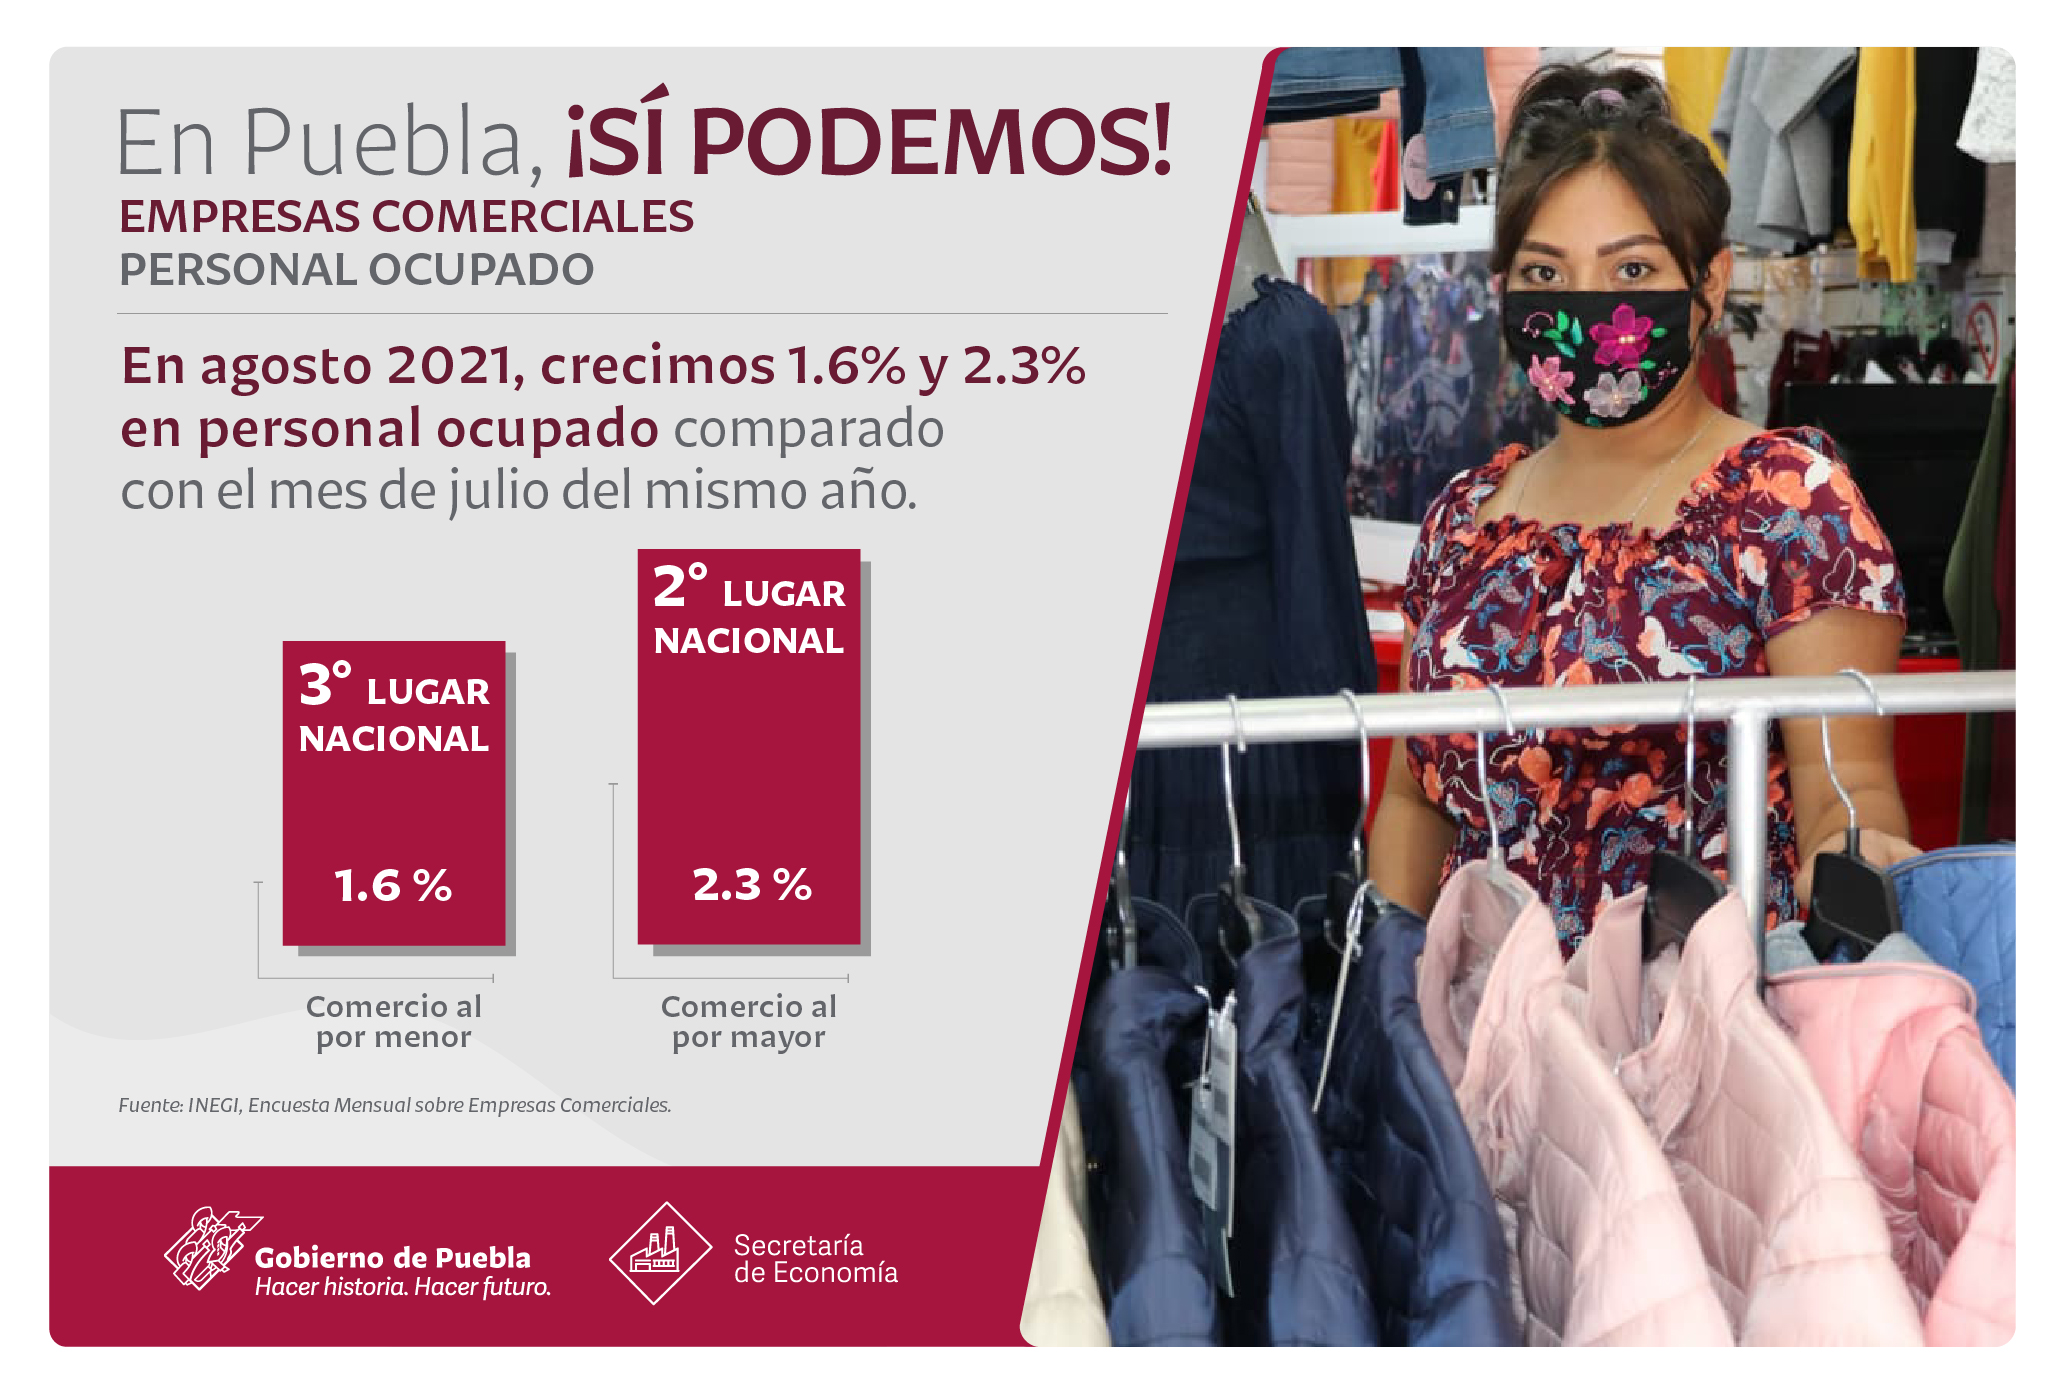 Crece empleo e ingresos del sector comercial en Puebla: Economía